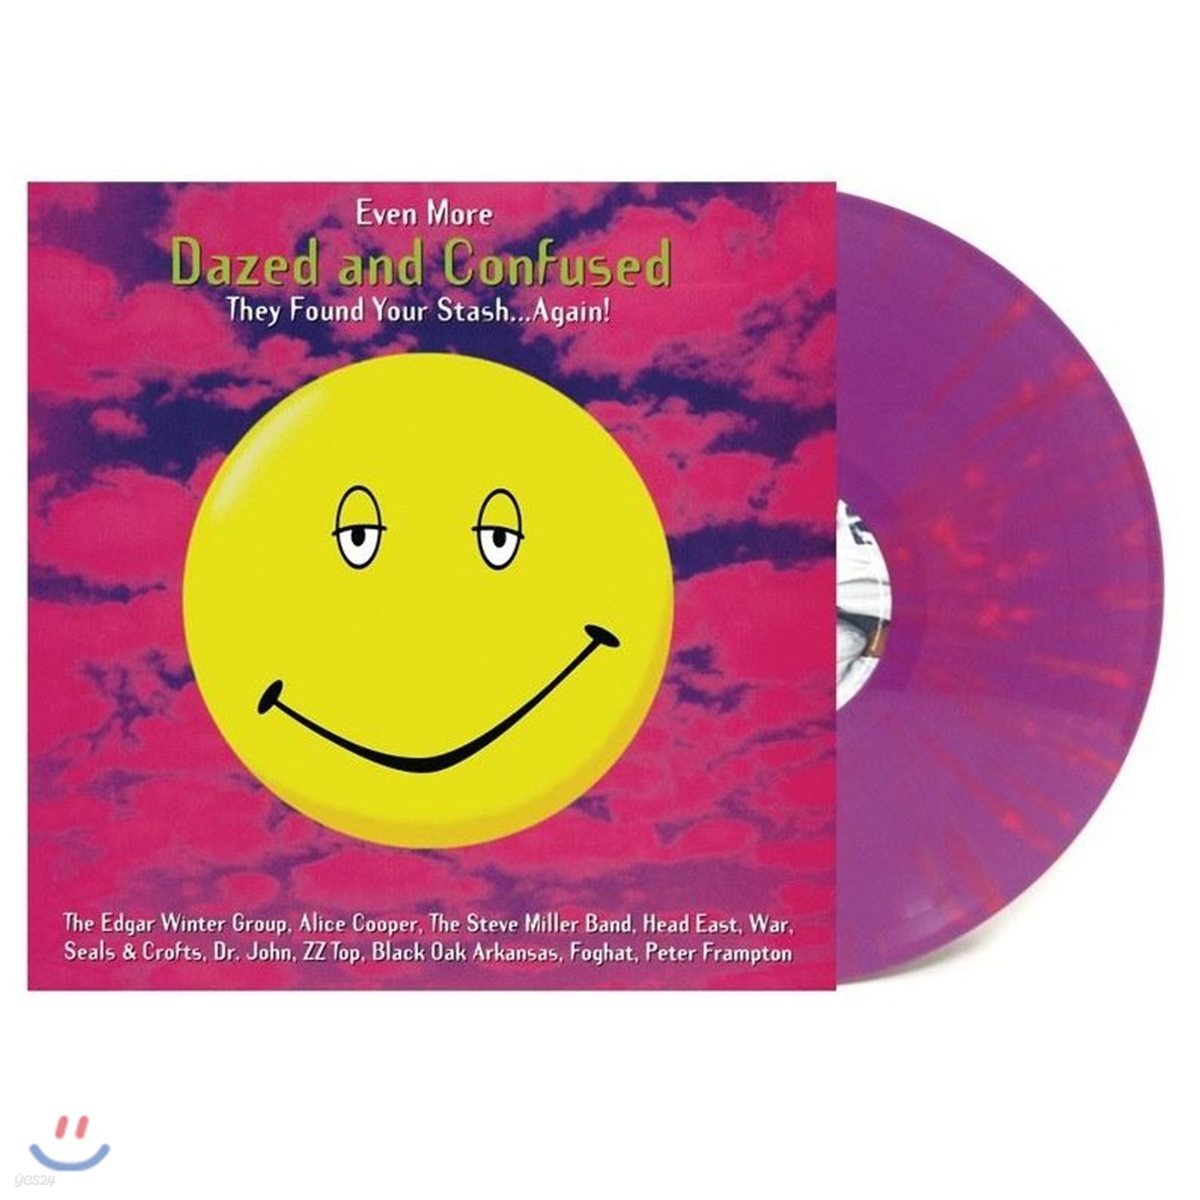 &#39;멍하고 혼돈스러운 &#39; 영화음악 [데이즈드 앤 컨퓨즈드] (Dazed and Confused OST vol.2 - Even More Dazed and Confused) [퍼플 &amp; 핑크 스플래터 컬러 LP]